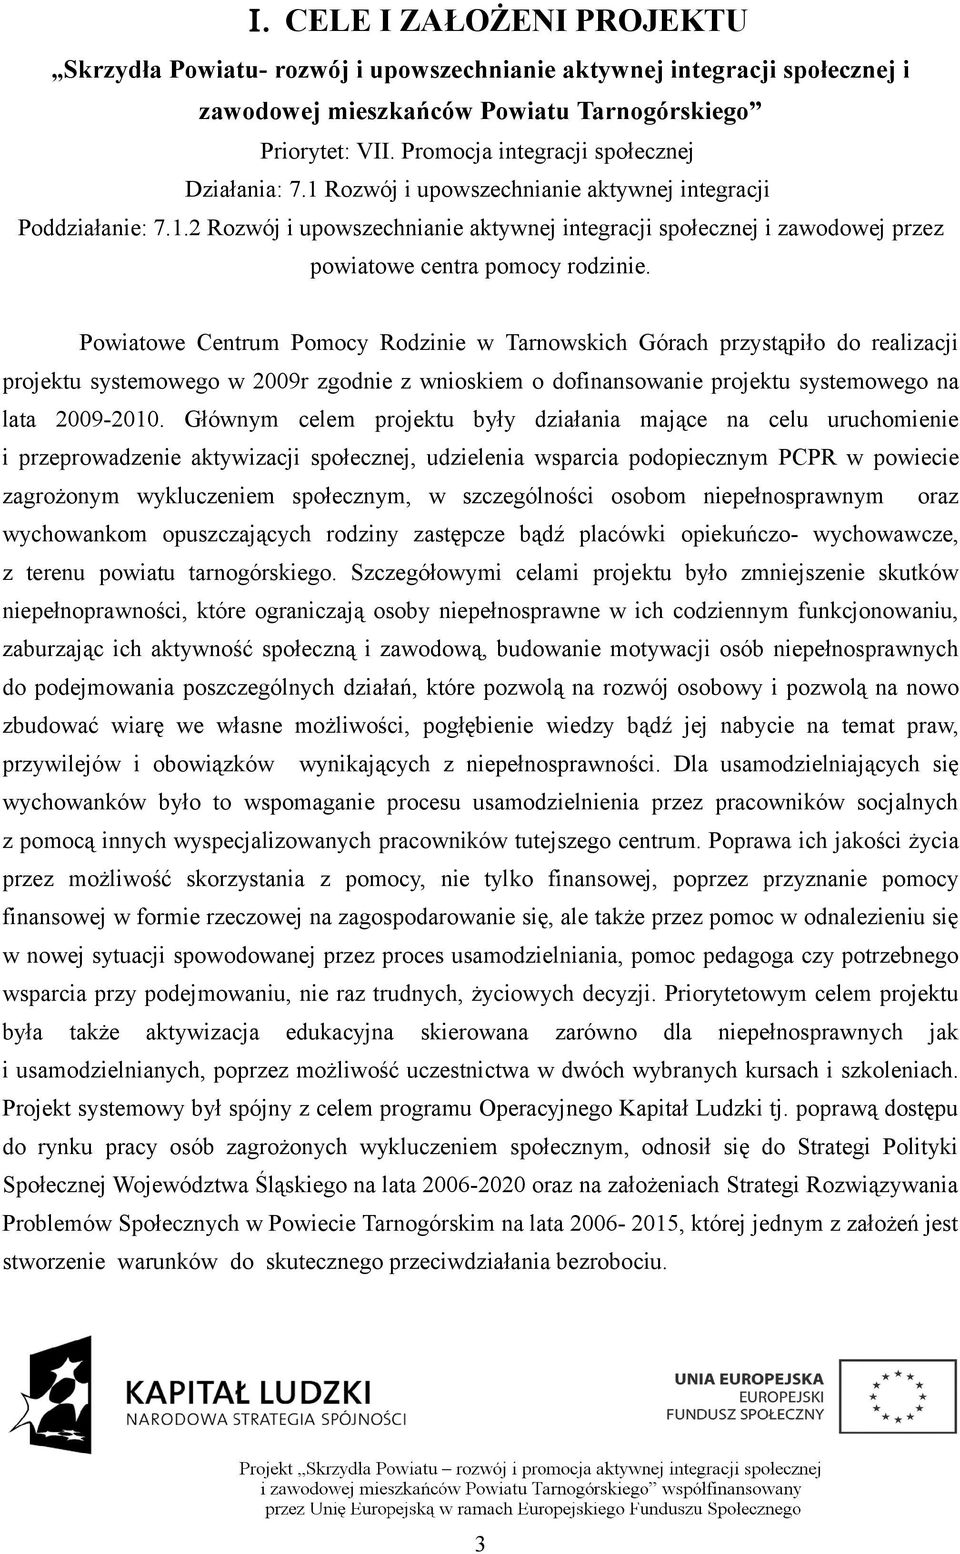 Powiatowe Centrum Pomocy Rodzinie w Tarnowskich Górach przystąpiło do realizacji projektu systemowego w 2009r zgodnie z wnioskiem o dofinansowanie projektu systemowego na lata 2009-2010.